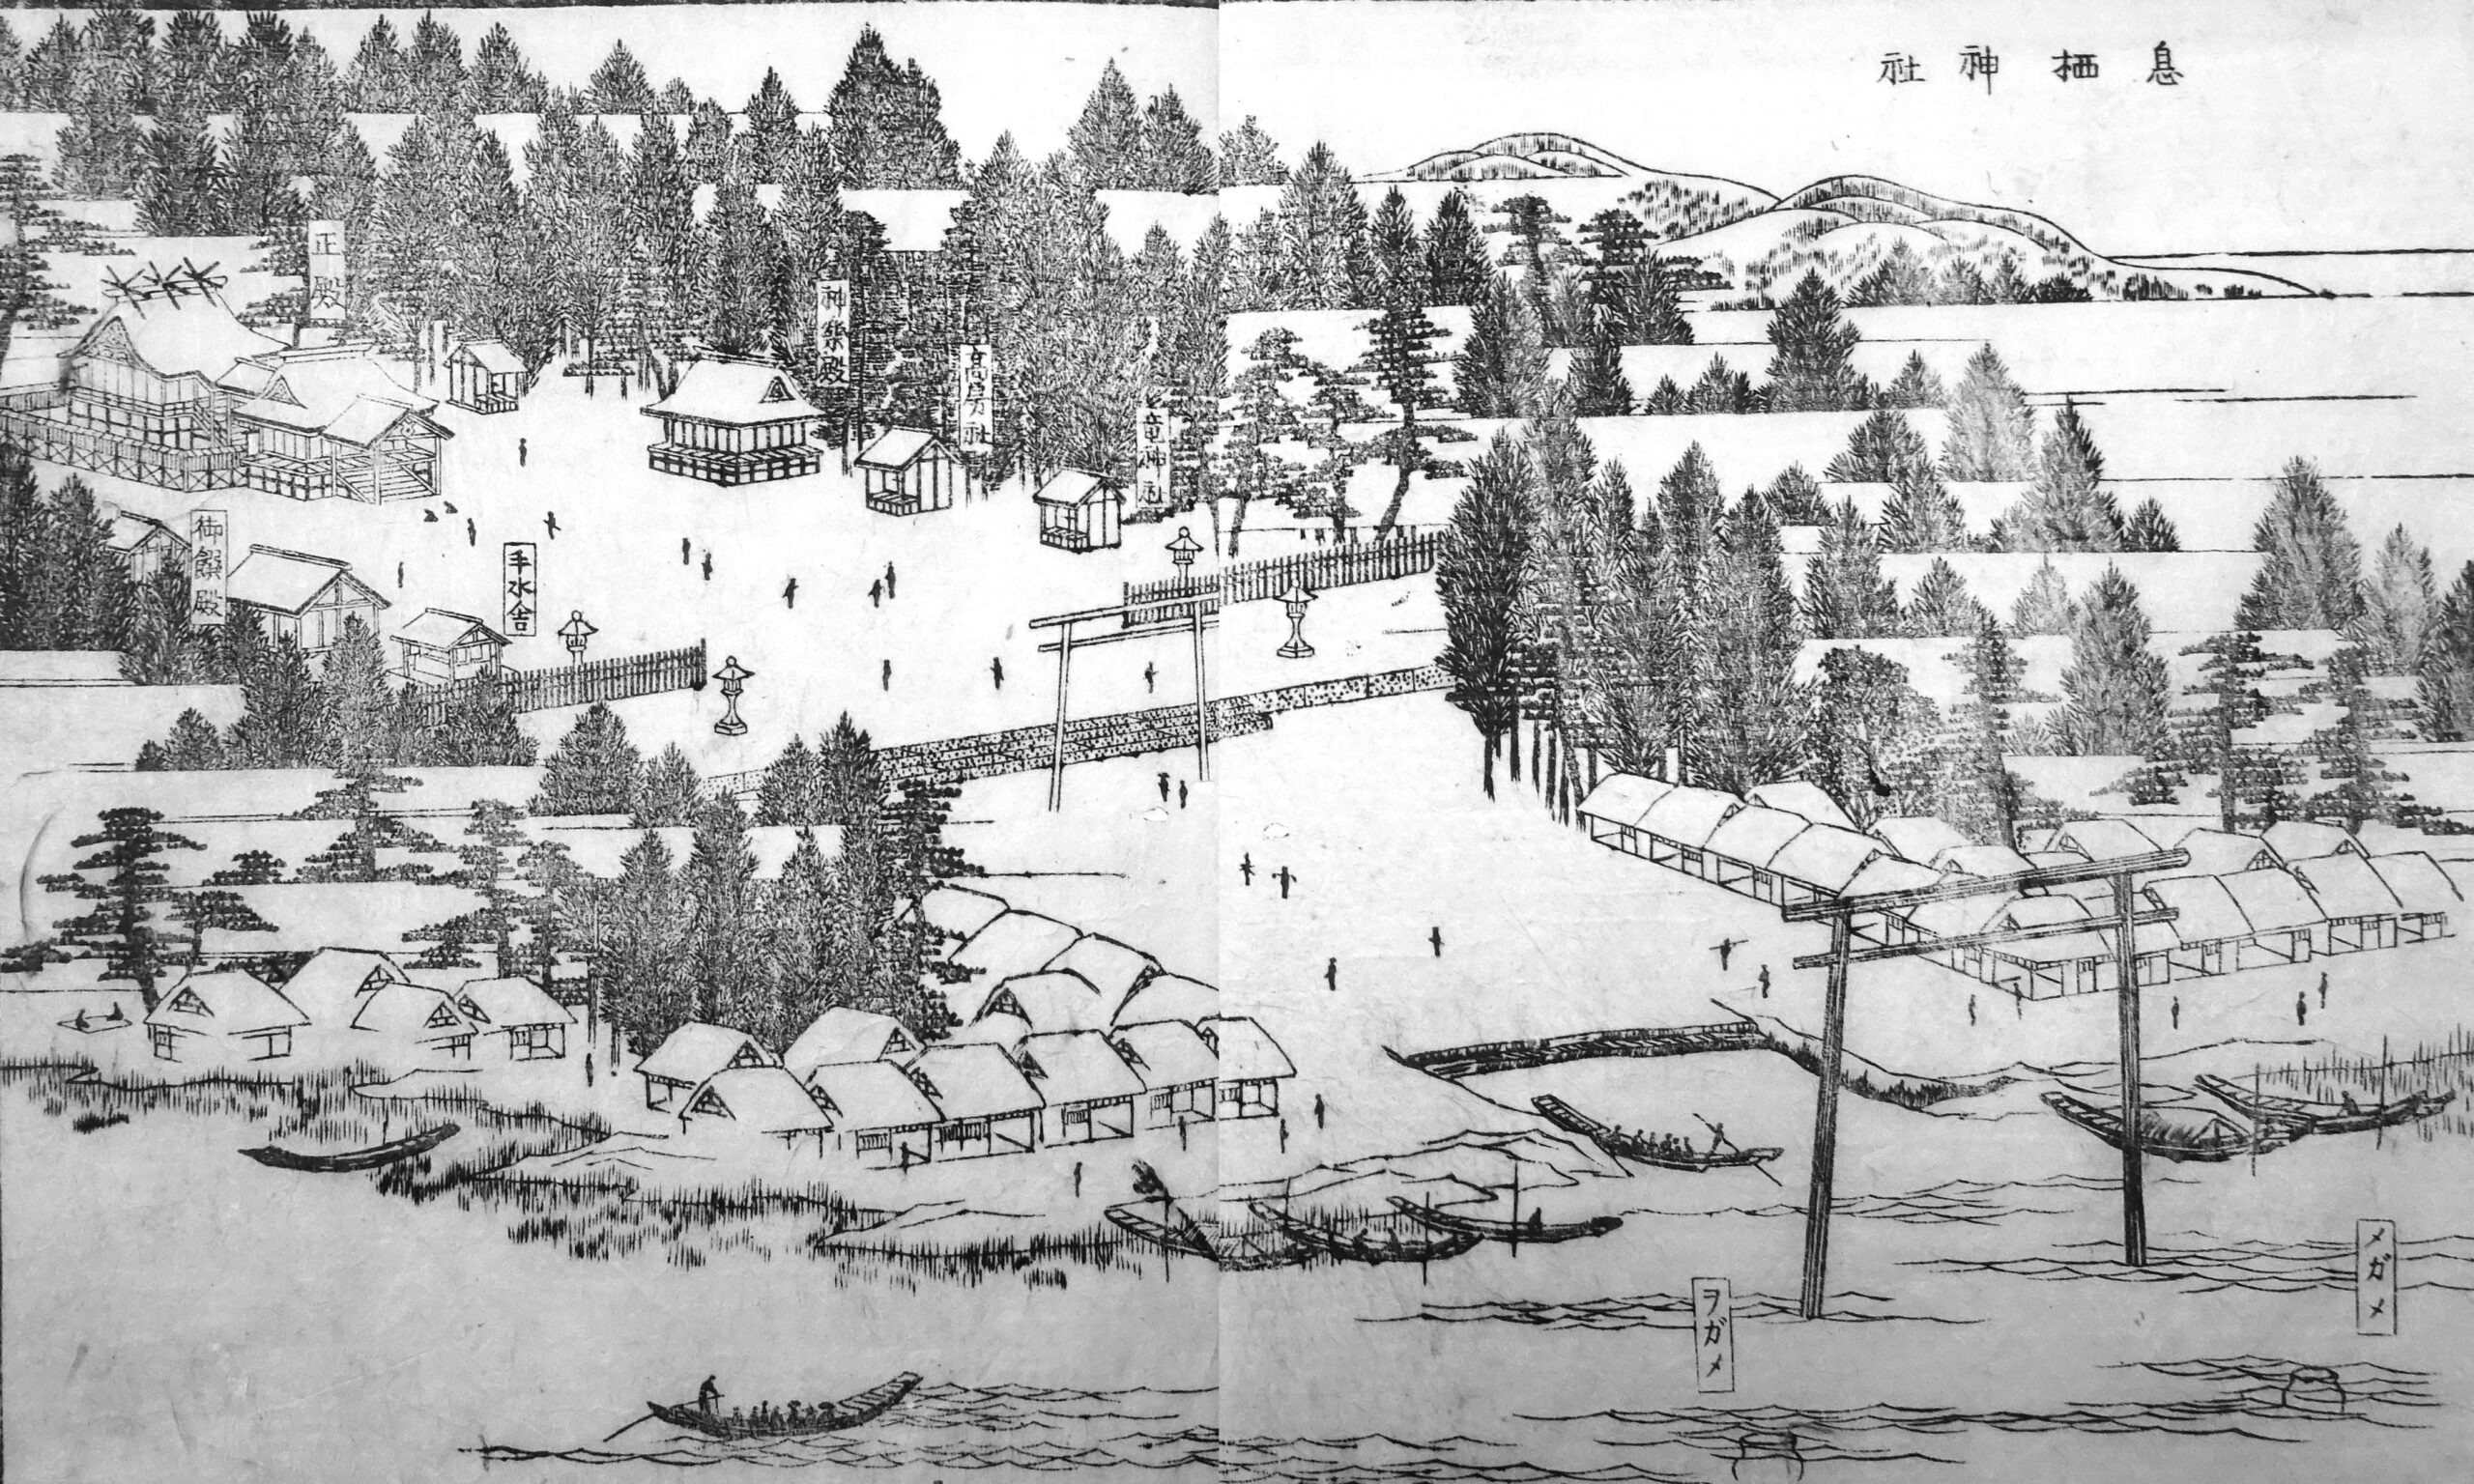 江戸時代の息栖神社と息栖河岸の賑わいを描いた鳥瞰図